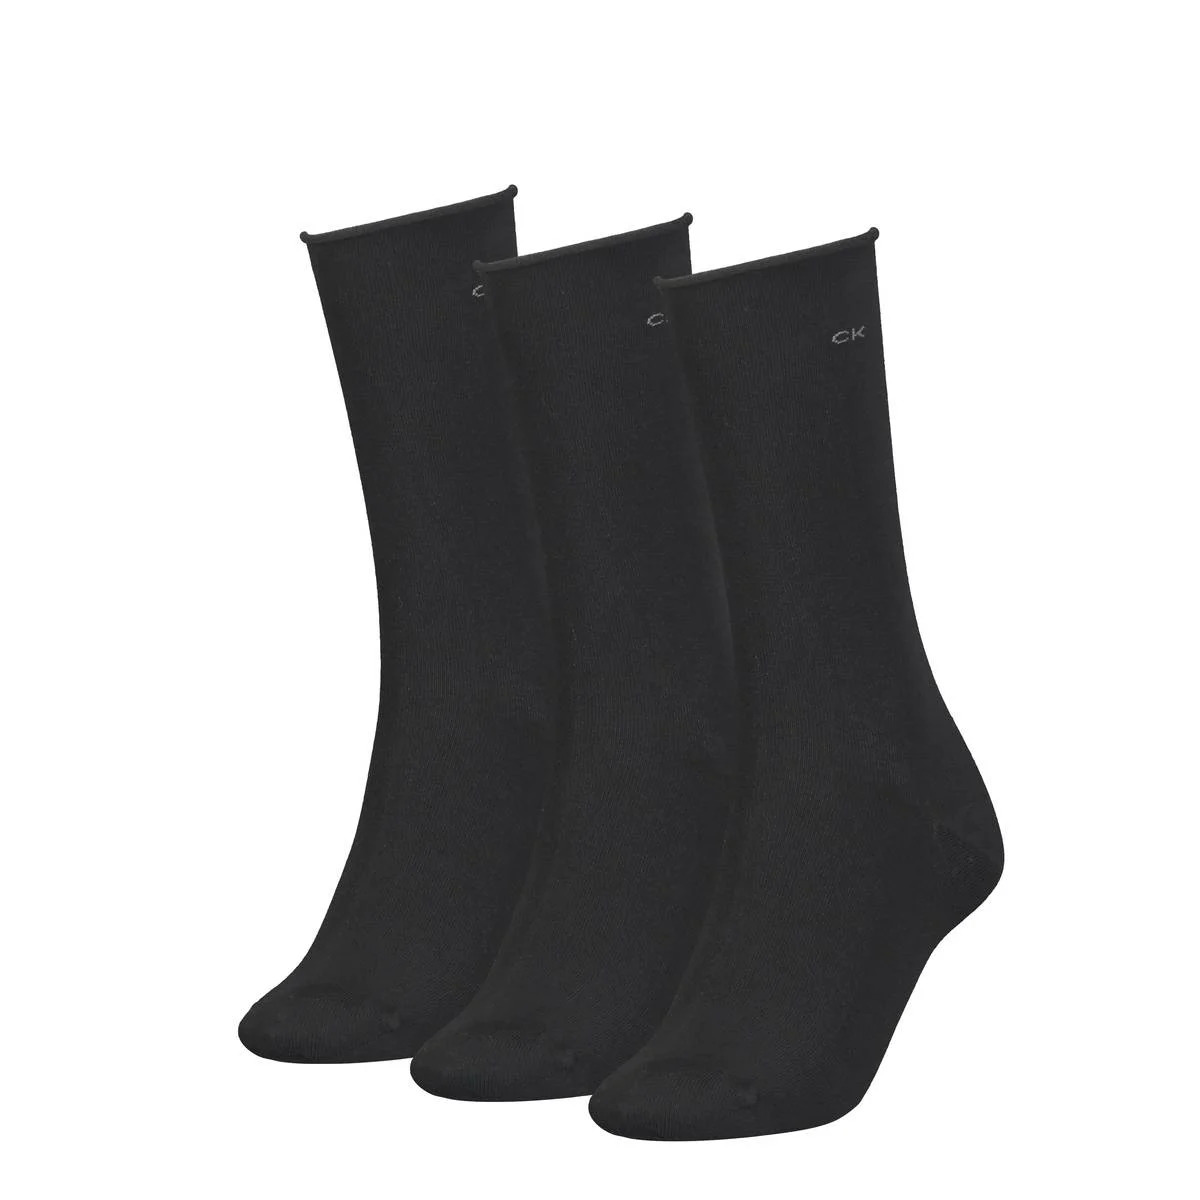 Calvin Klein Socks 3pack Kousen dames